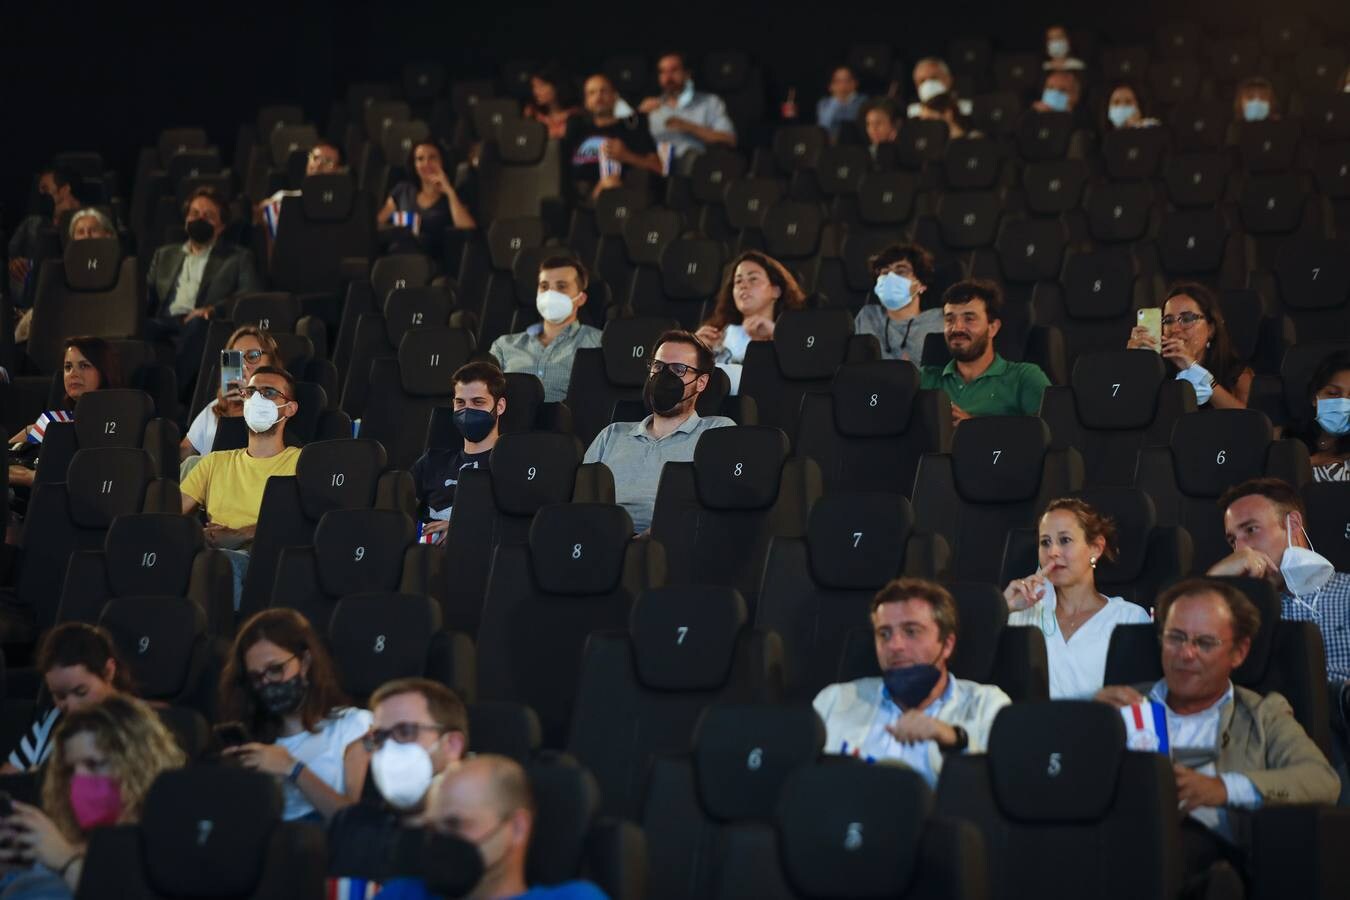 Un renovado Cinesur Nervión Plaza abre sus puertas de nuevo en Sevilla